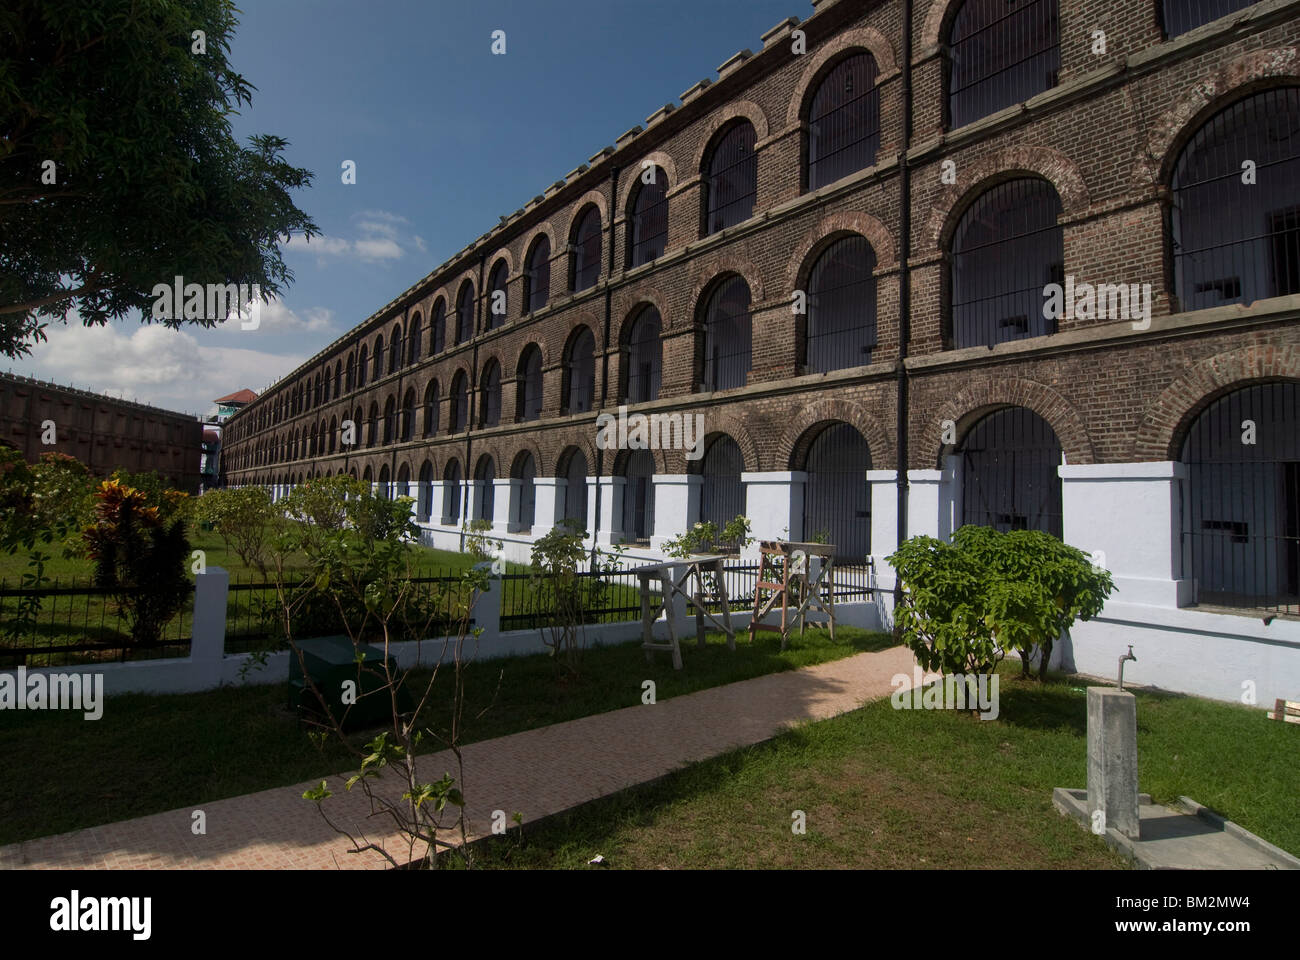 Ancienne prison prison cellulaire, Port Blair, Andaman Islands, Inde Banque D'Images